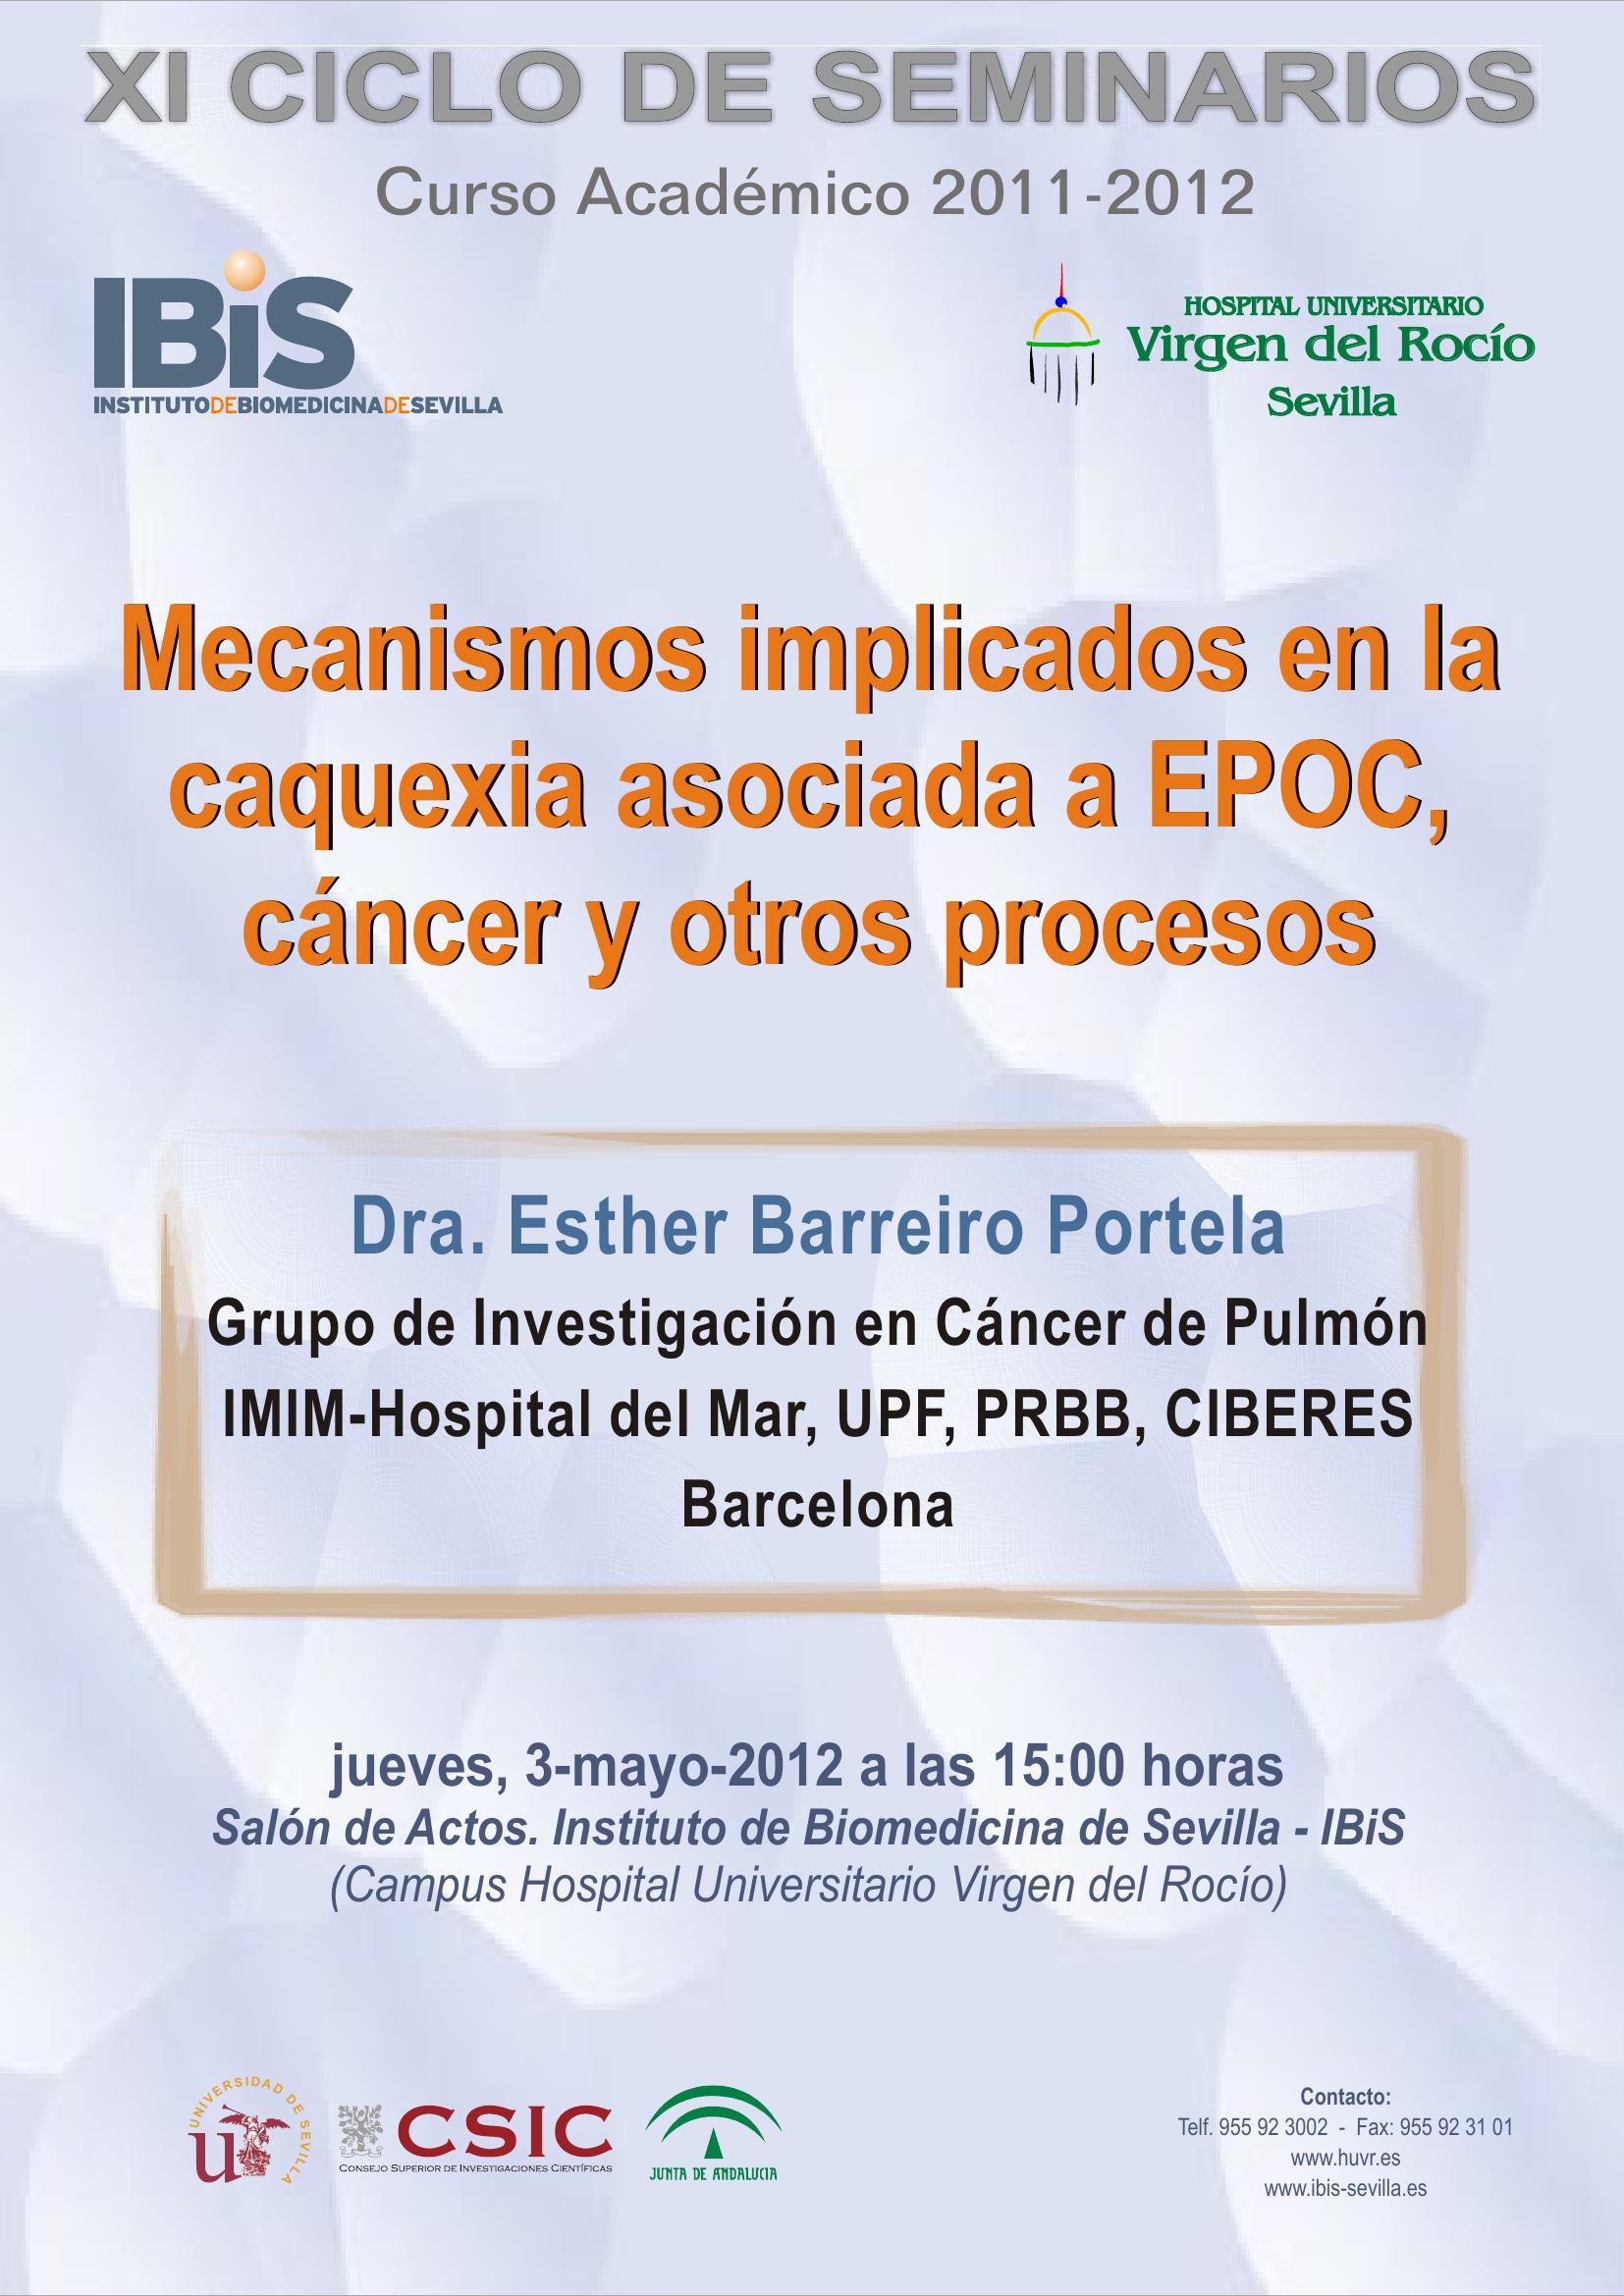 Poster: Mecanismos implicados en la caquexia asociada a EPOC, cáncer y otros procesos.